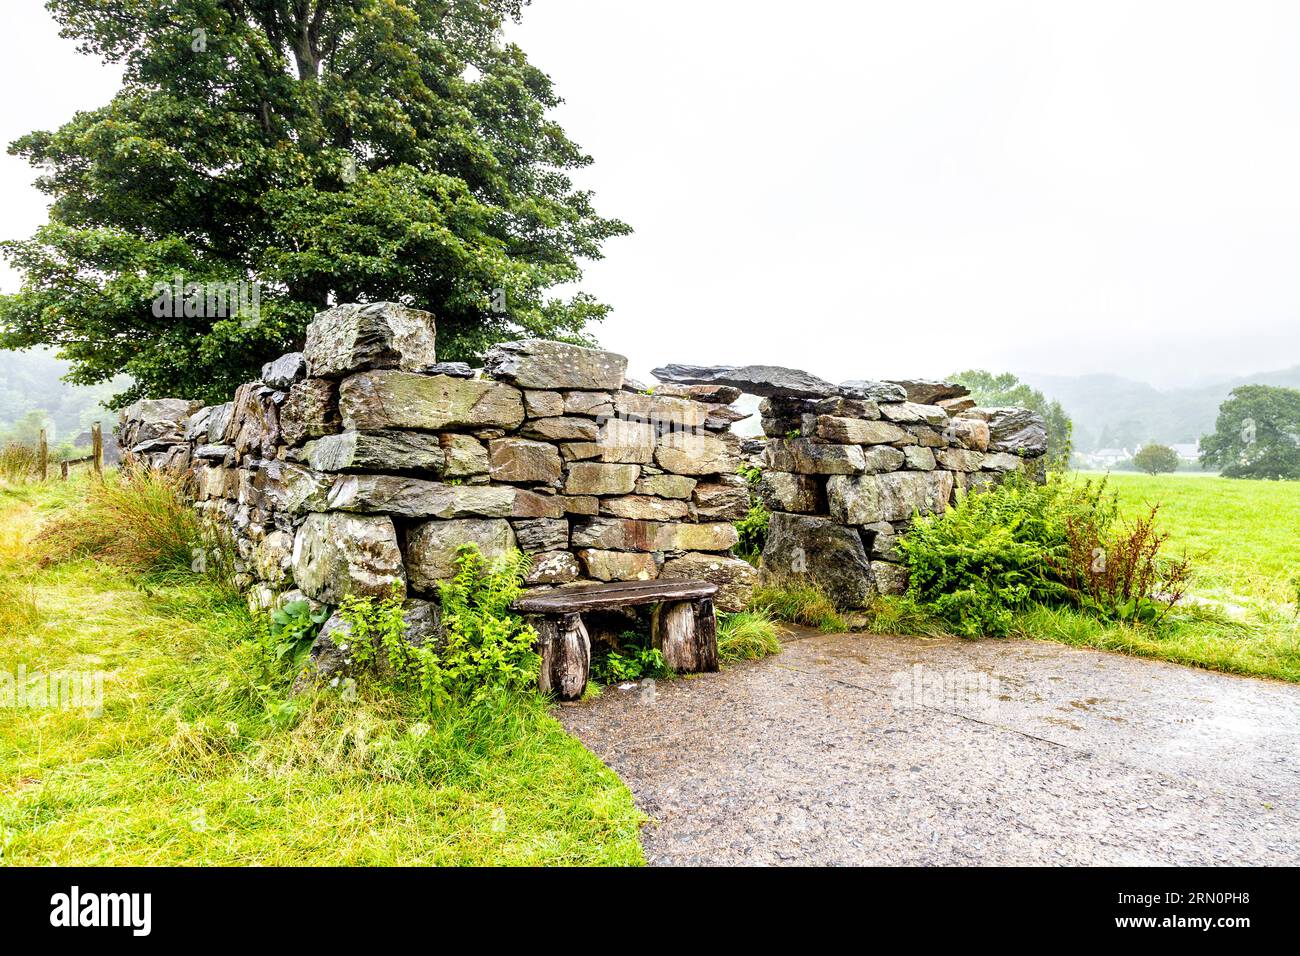 Ruine Cottage mit der Skulptur des Hundes Gelert in der Nähe von Gelert's Grab, Beddgelert, Snowdonia National Park, Gwynedd, Wales, UK Stockfoto